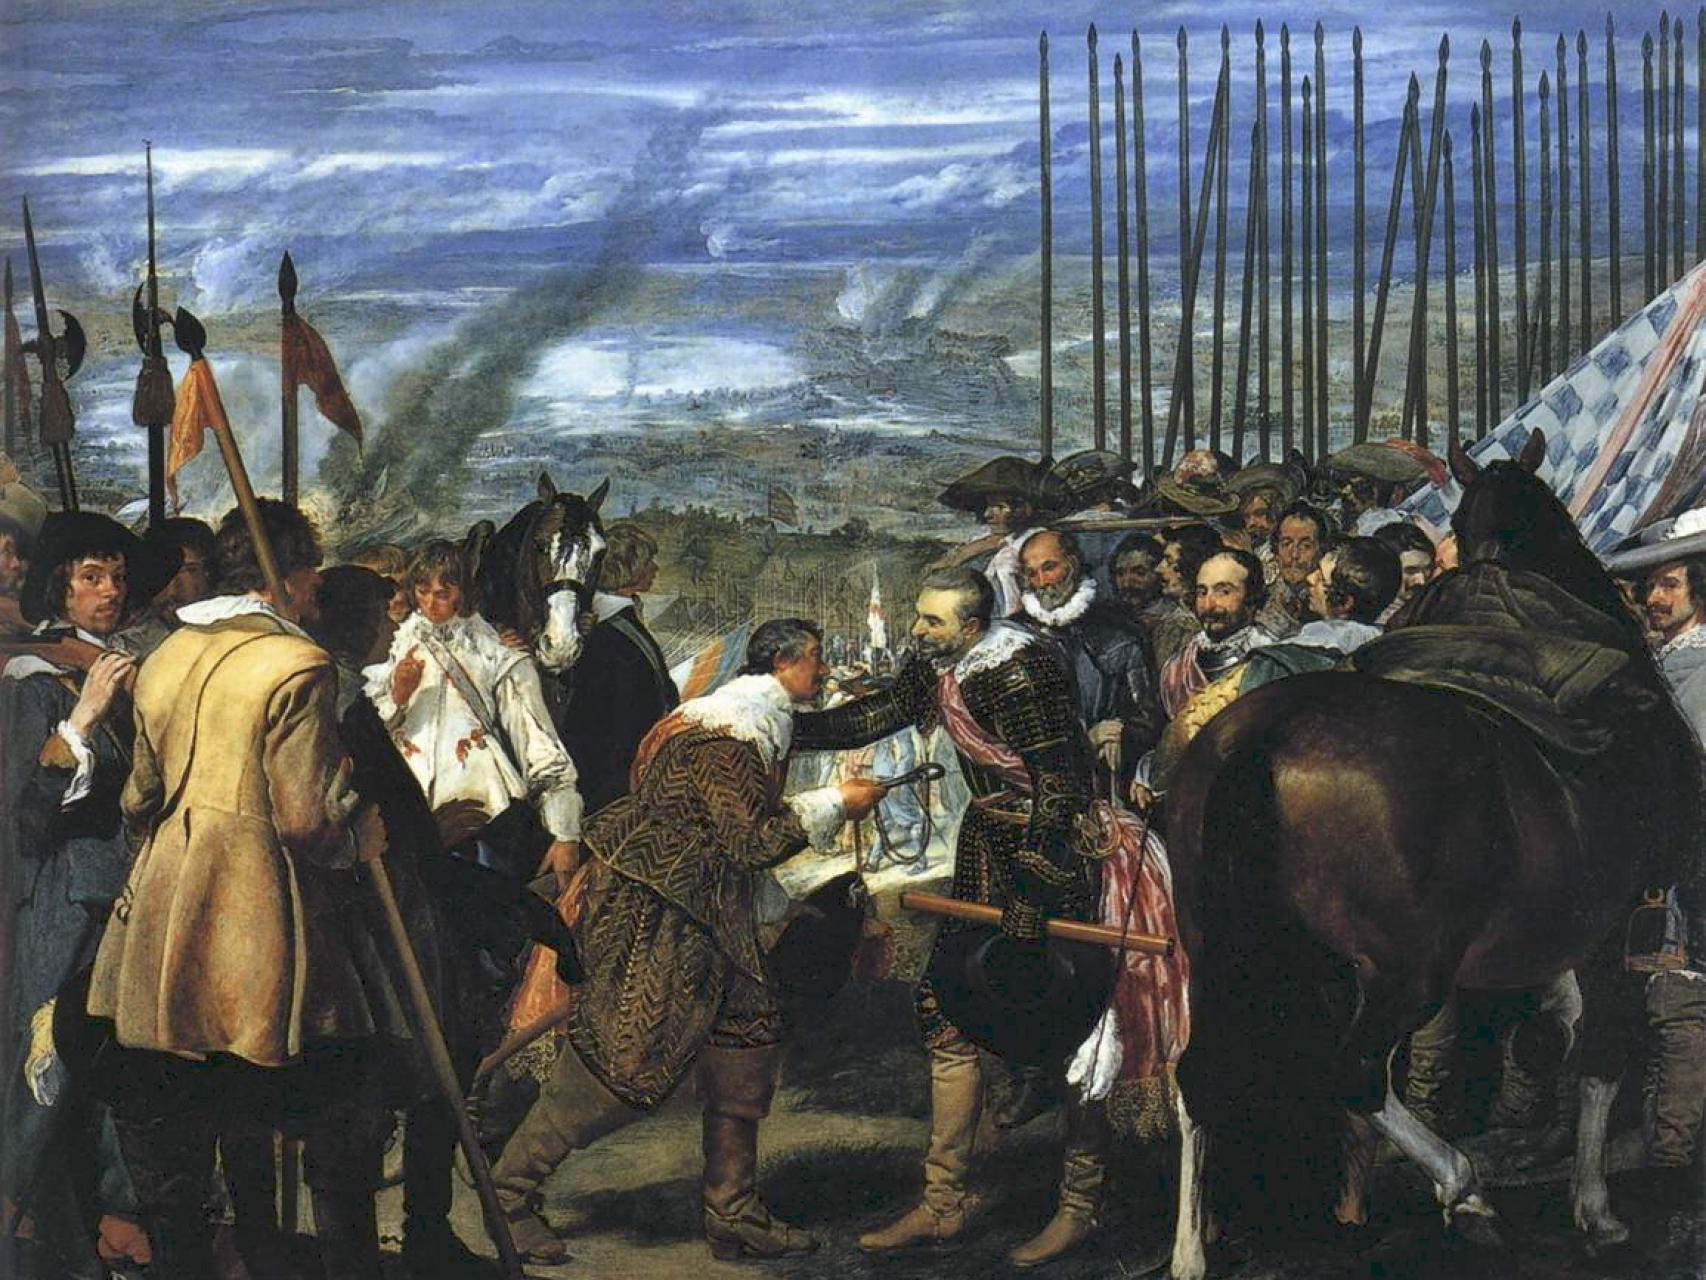 La rendición de Breda o Las lanzas, por Diego Velázquez.